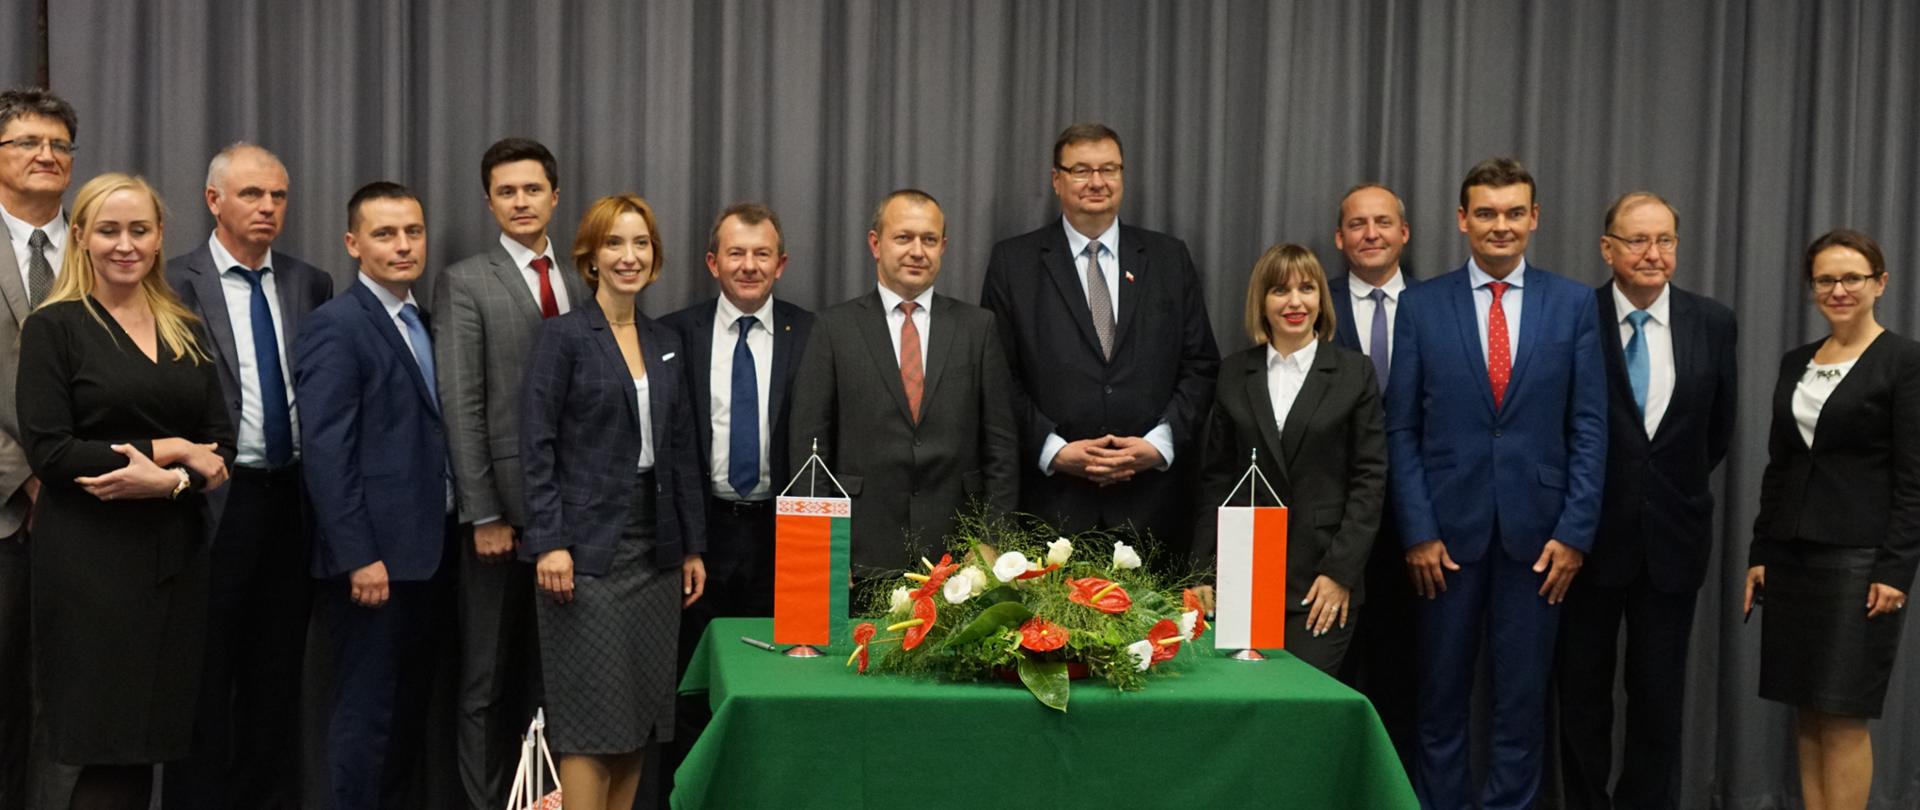 Delegacje - polska i białoruska